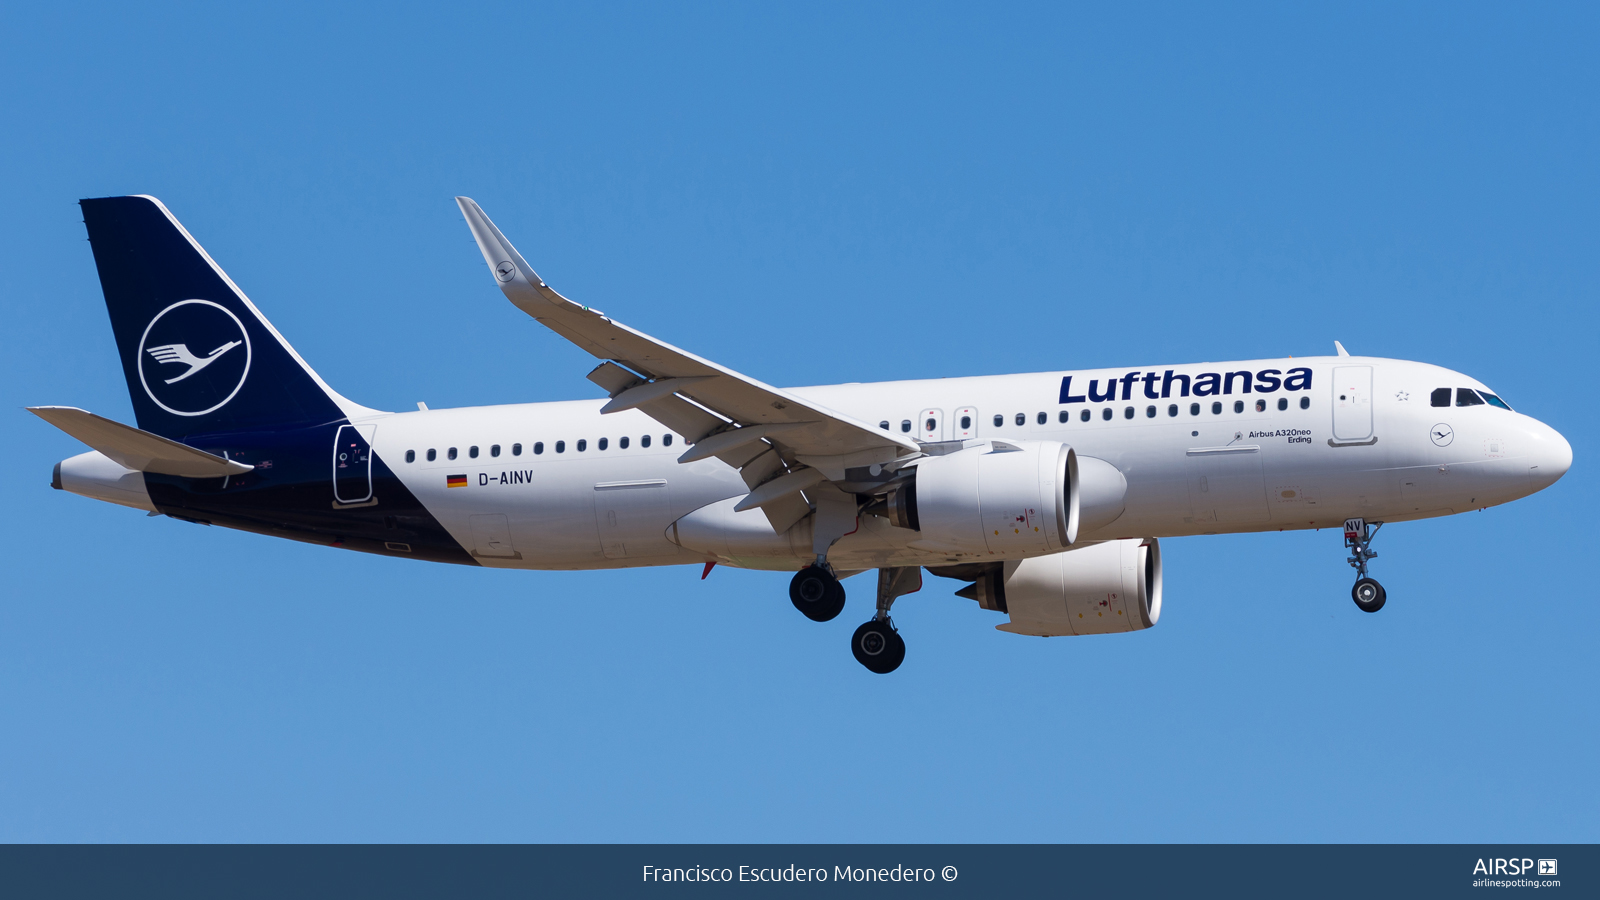 Lufthansa  Airbus A320neo  D-AINV